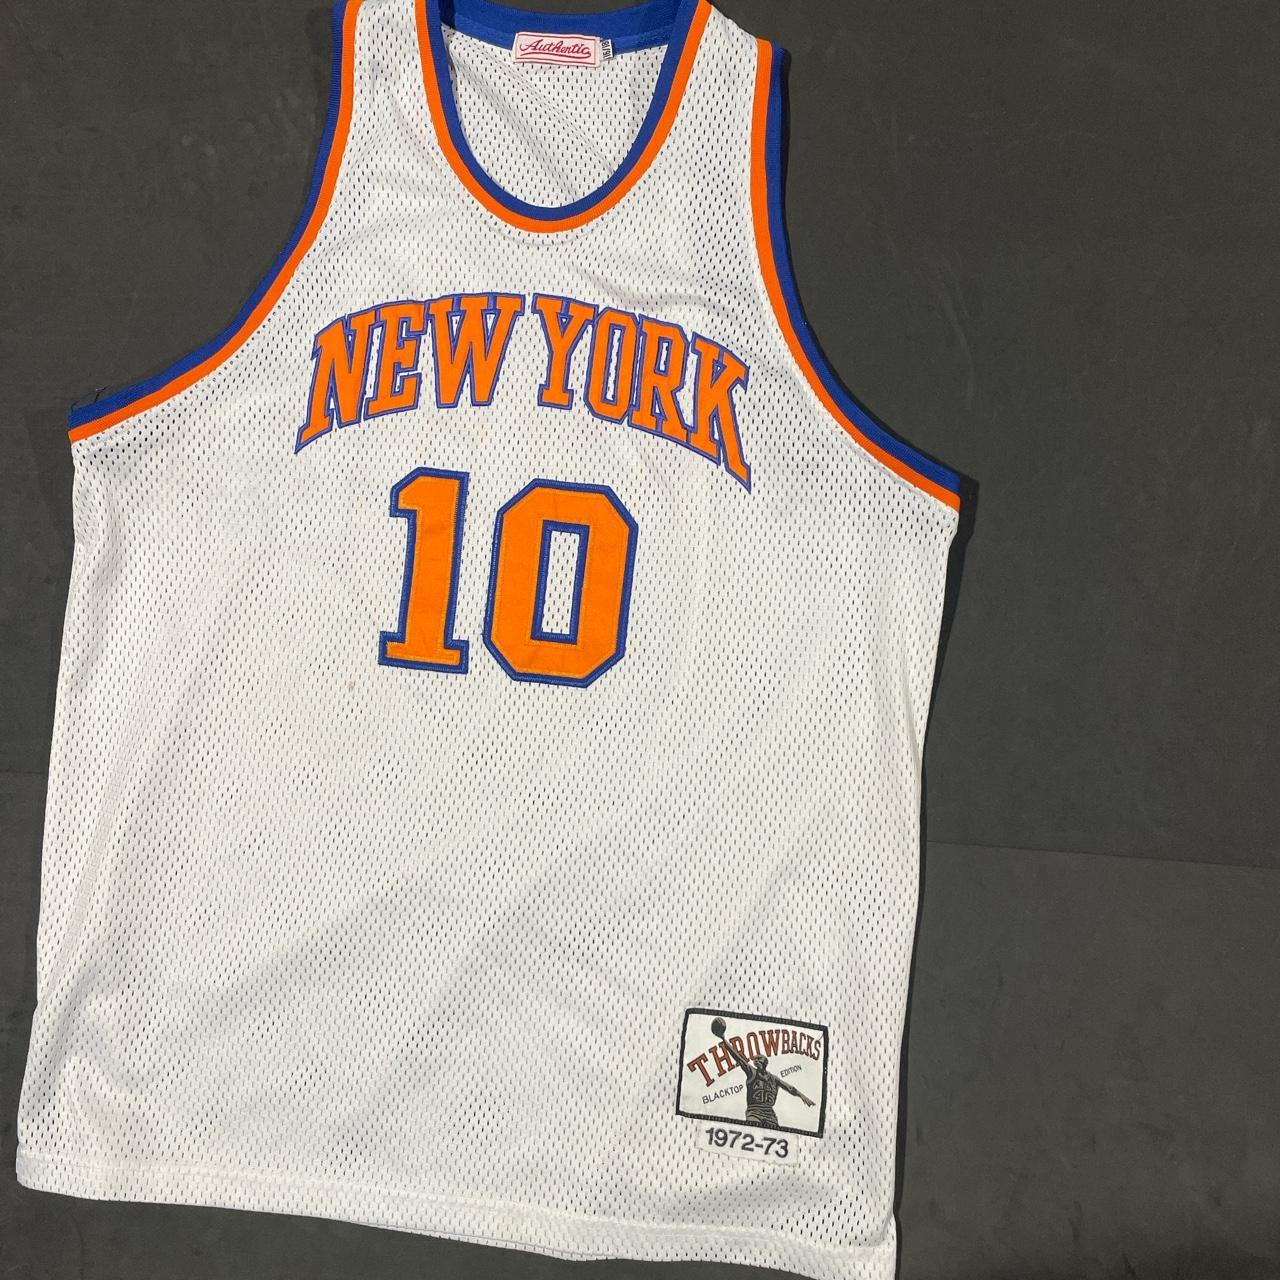 Mitchell & Ness Authentic Walt Frazier New York Knicks 1972-73 Jersey